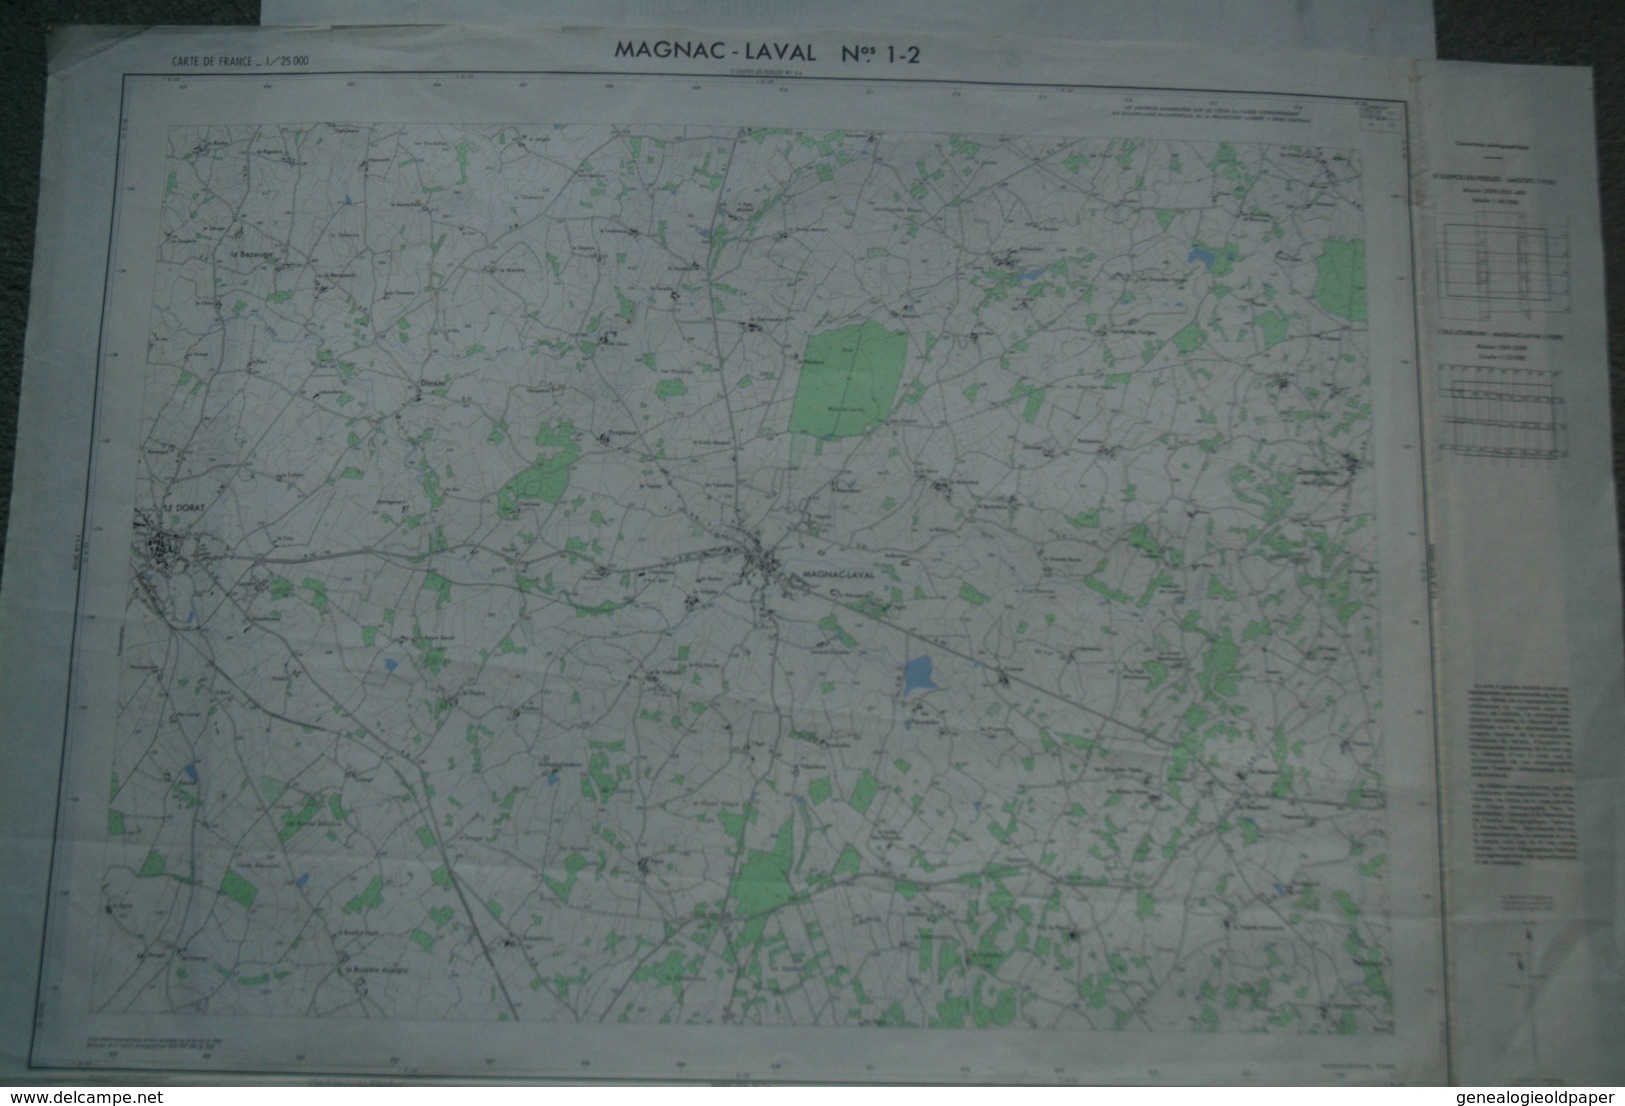 87 - MAGNAC LAVAL- PLAN TOPOGRAPHIQUE 1965- LE DORAT-DOMPIERRE LES EGLISES-DINSAC- N° 1-2- ESCURAT- RARE - Mapas Topográficas